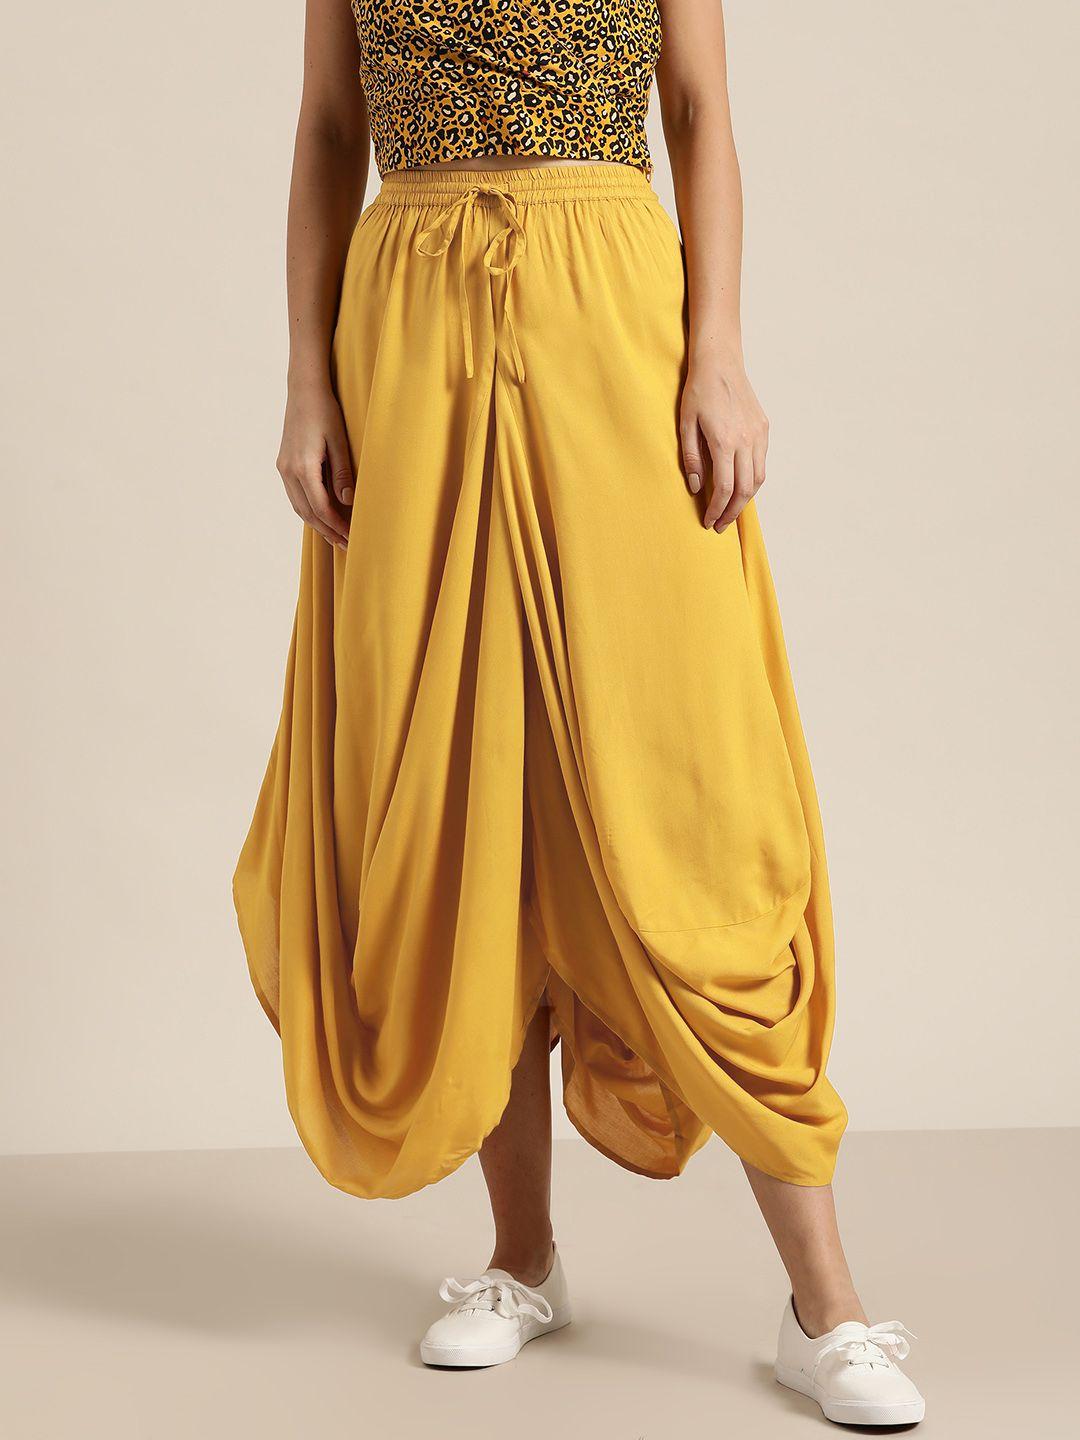 shae by sassafras mustard yellow liva dhoti style skirt